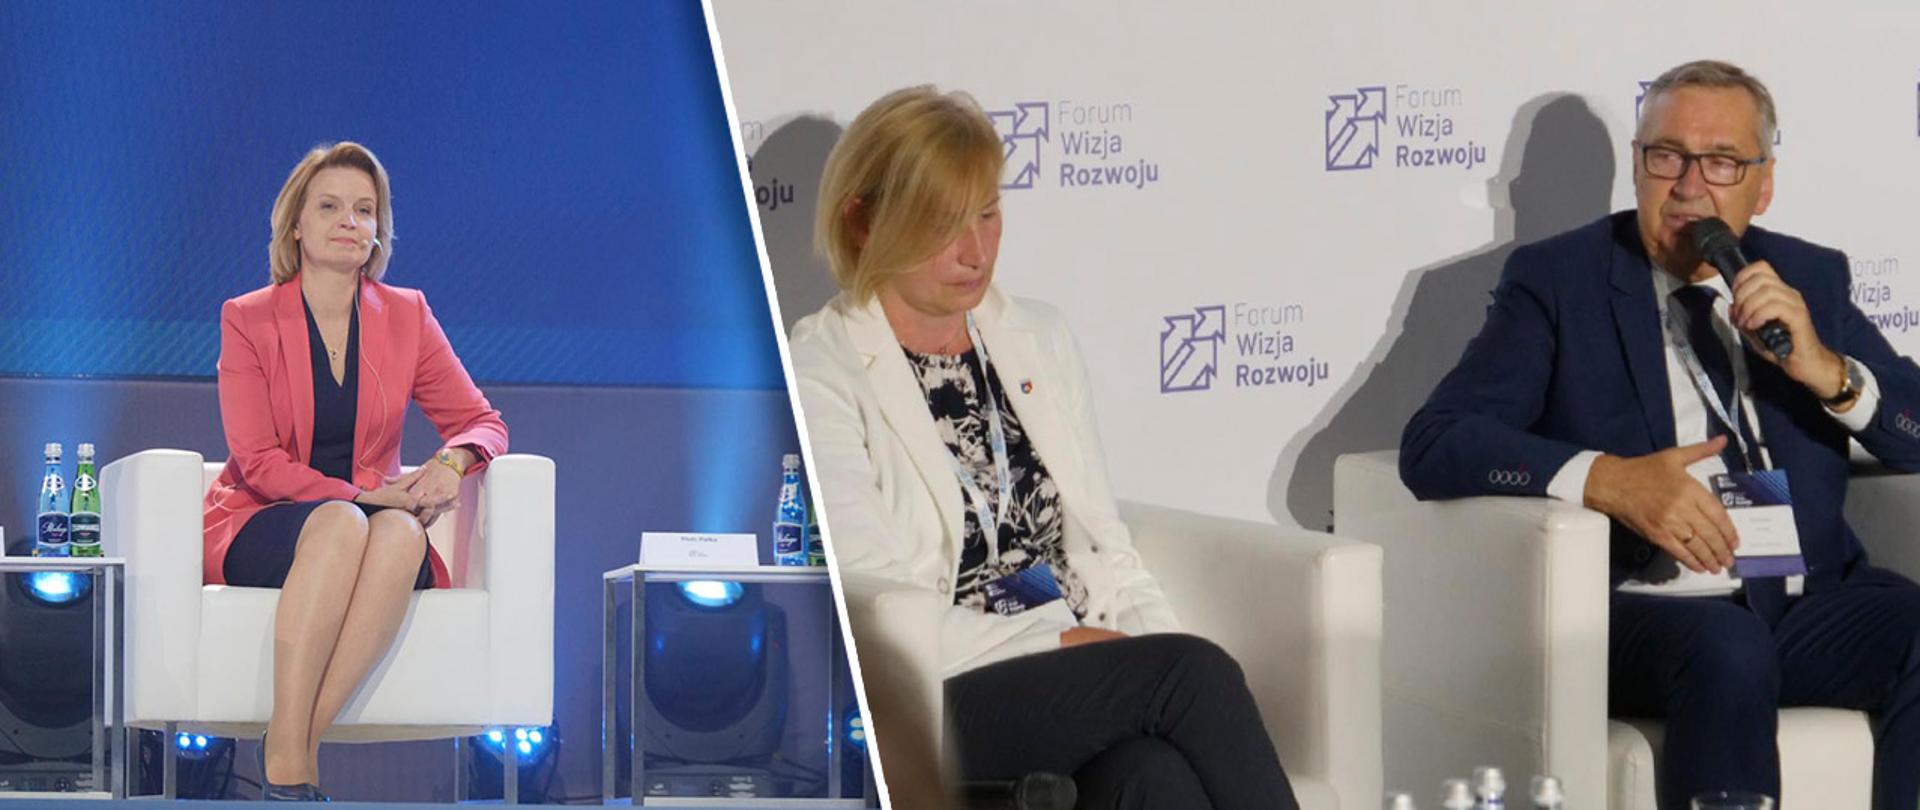 Zdjęcie siedzącej minister Sochy z lewej strony oraz osobne zdjęcie siedzącego w fotelu ministra Szweda